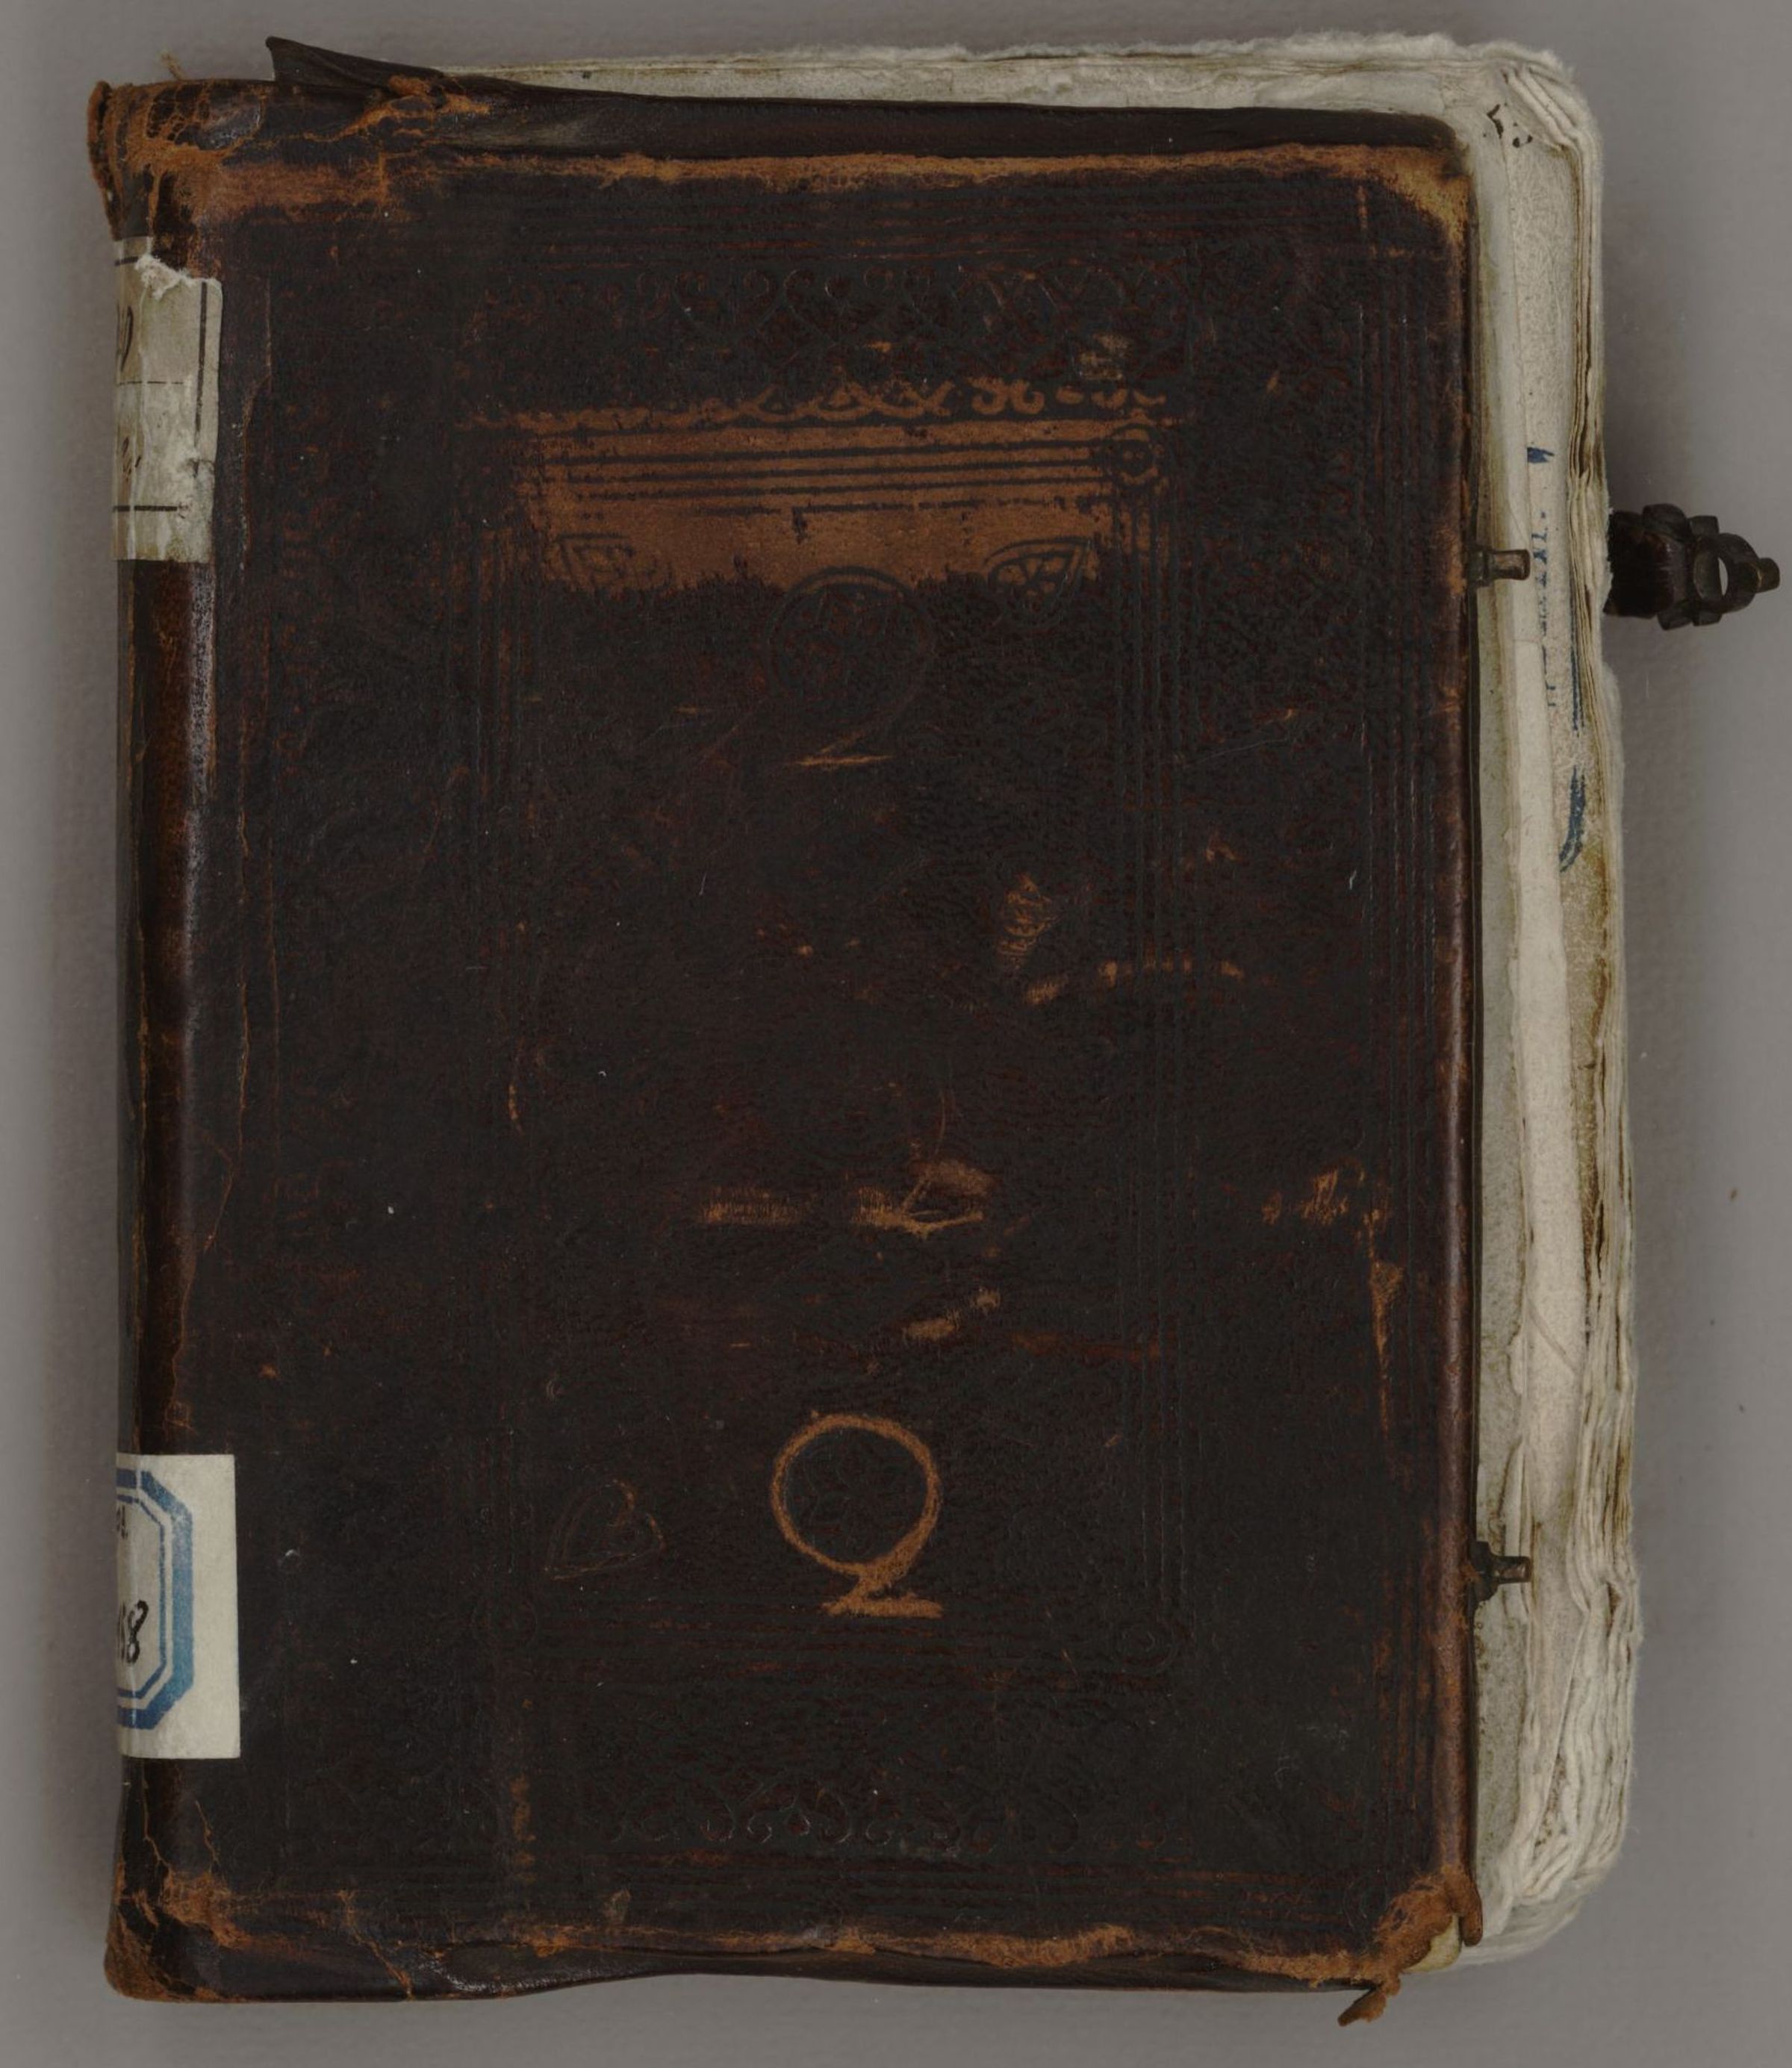 Первая л третья б. Верхняя крышка книги. Библия 16 века Московского скриптория. Старая электронная книга с крышками.